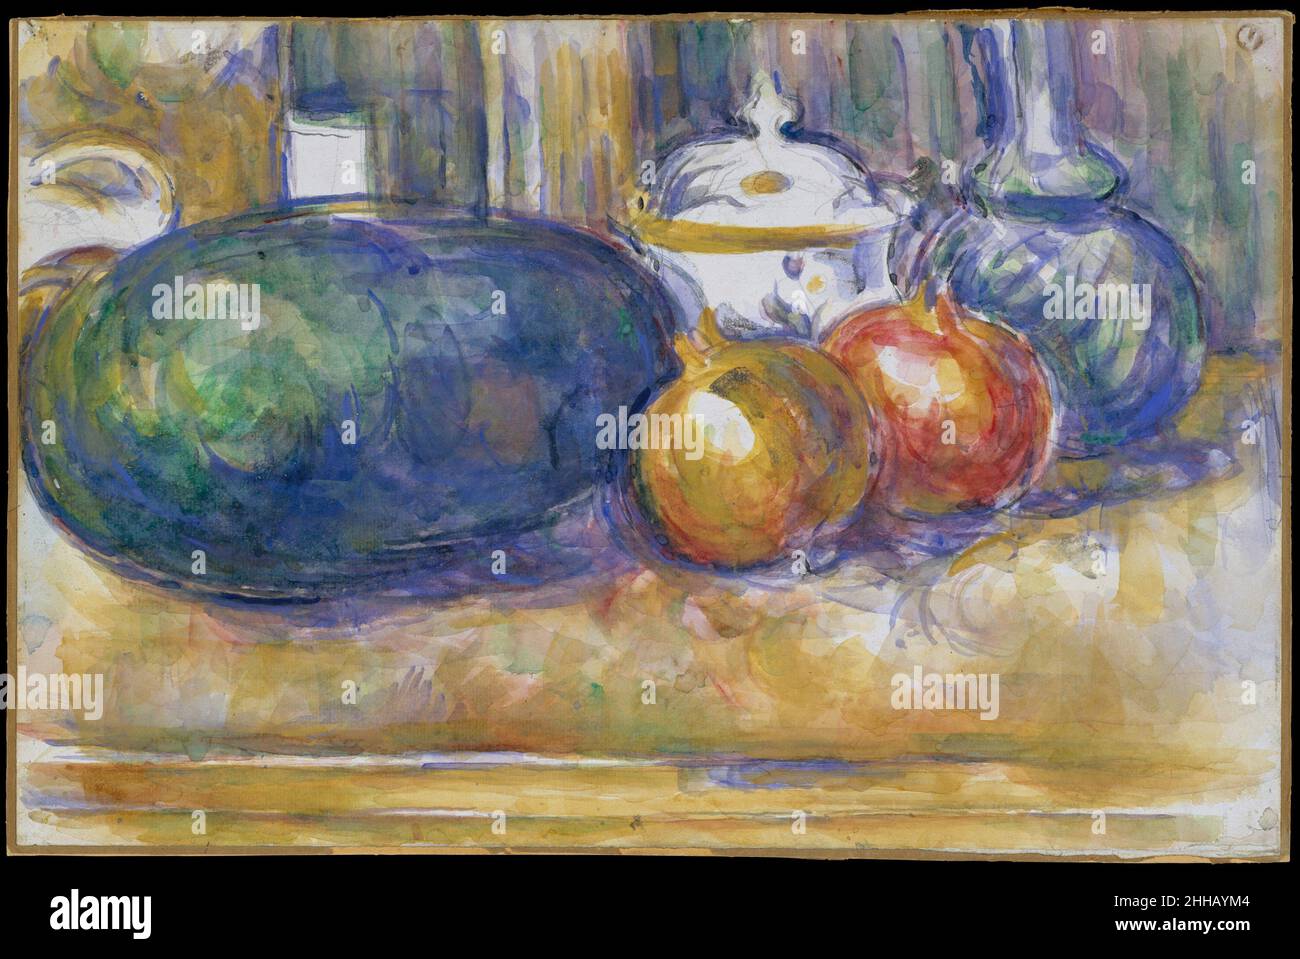 Encore-vie avec une pastèque et des grenades 1900–1906 Paul Cézanne Français de la vingtaine d'aquarelles encore vie Cézanne produit au cours de ses dernières années, ce travail est parmi les plus pleinement réalisé.Avec des traits fluides de couleur saturée, l'artiste attire l'attention sur ses compétences d'observation—son attention aux réflexions entre les objets est rarement aussi apparente—et de création.Les objets arrondis regroupés, y compris une pastèque huppée, deux grenades, un vase ou une carafe en verre bulbeux, et un bol à sucre conjré du blanc réservé du papier, ont tous deux une qual volumétrique Banque D'Images